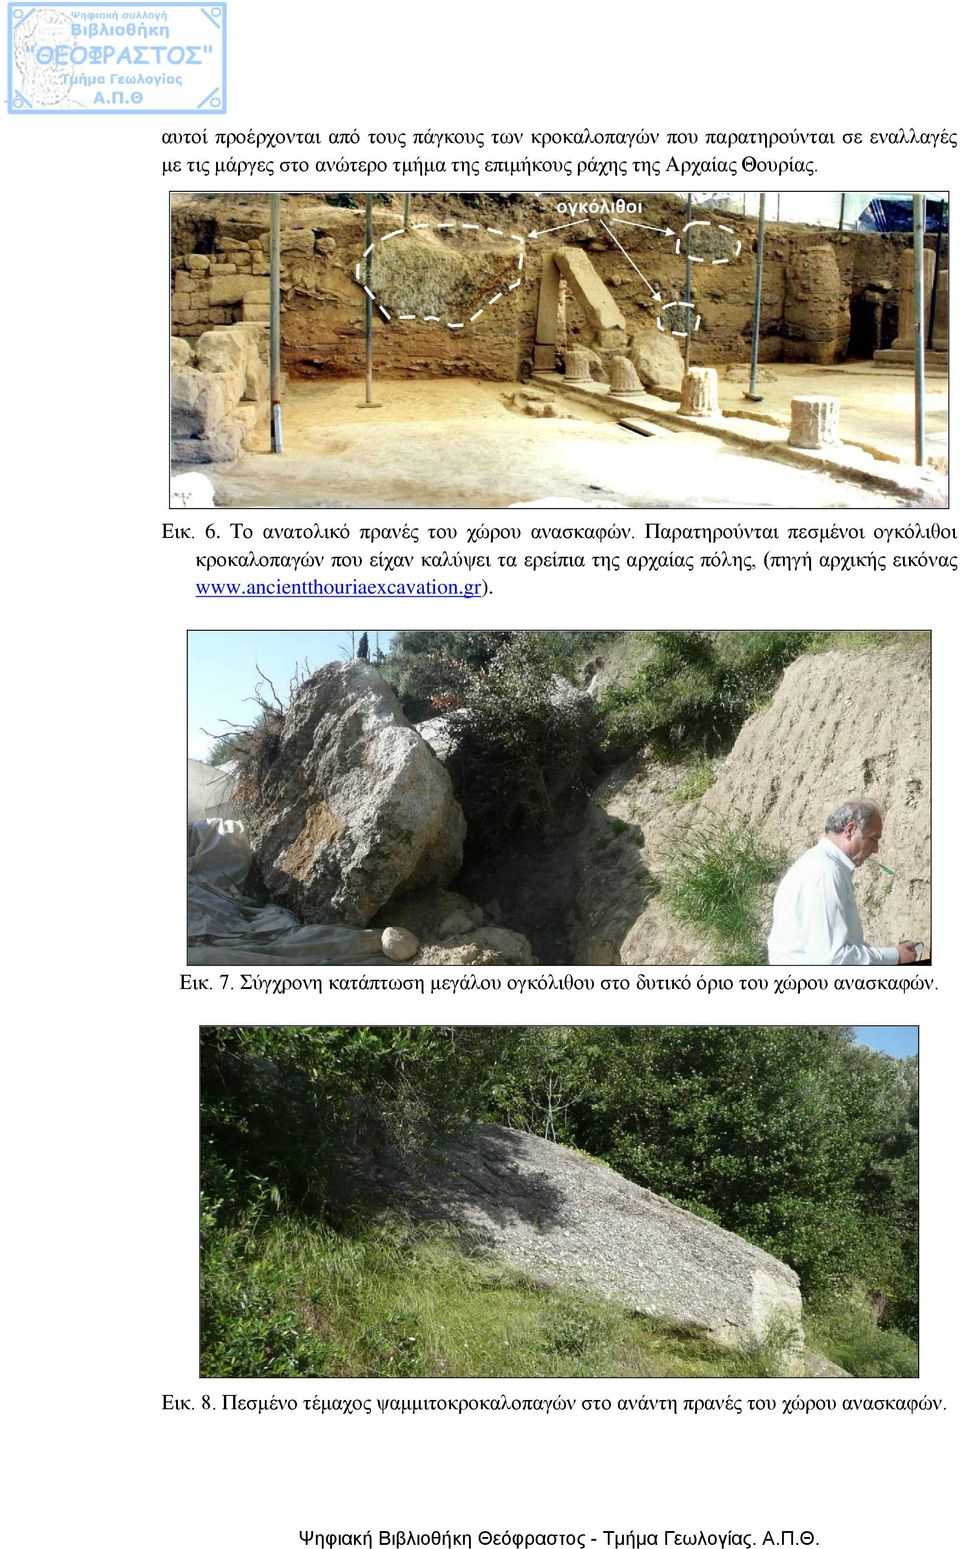 Παρατηρούνται πεσμένοι ογκόλιθοι κροκαλοπαγών που είχαν καλύψει τα ερείπια της αρχαίας πόλης, (πηγή αρχικής εικόνας www.